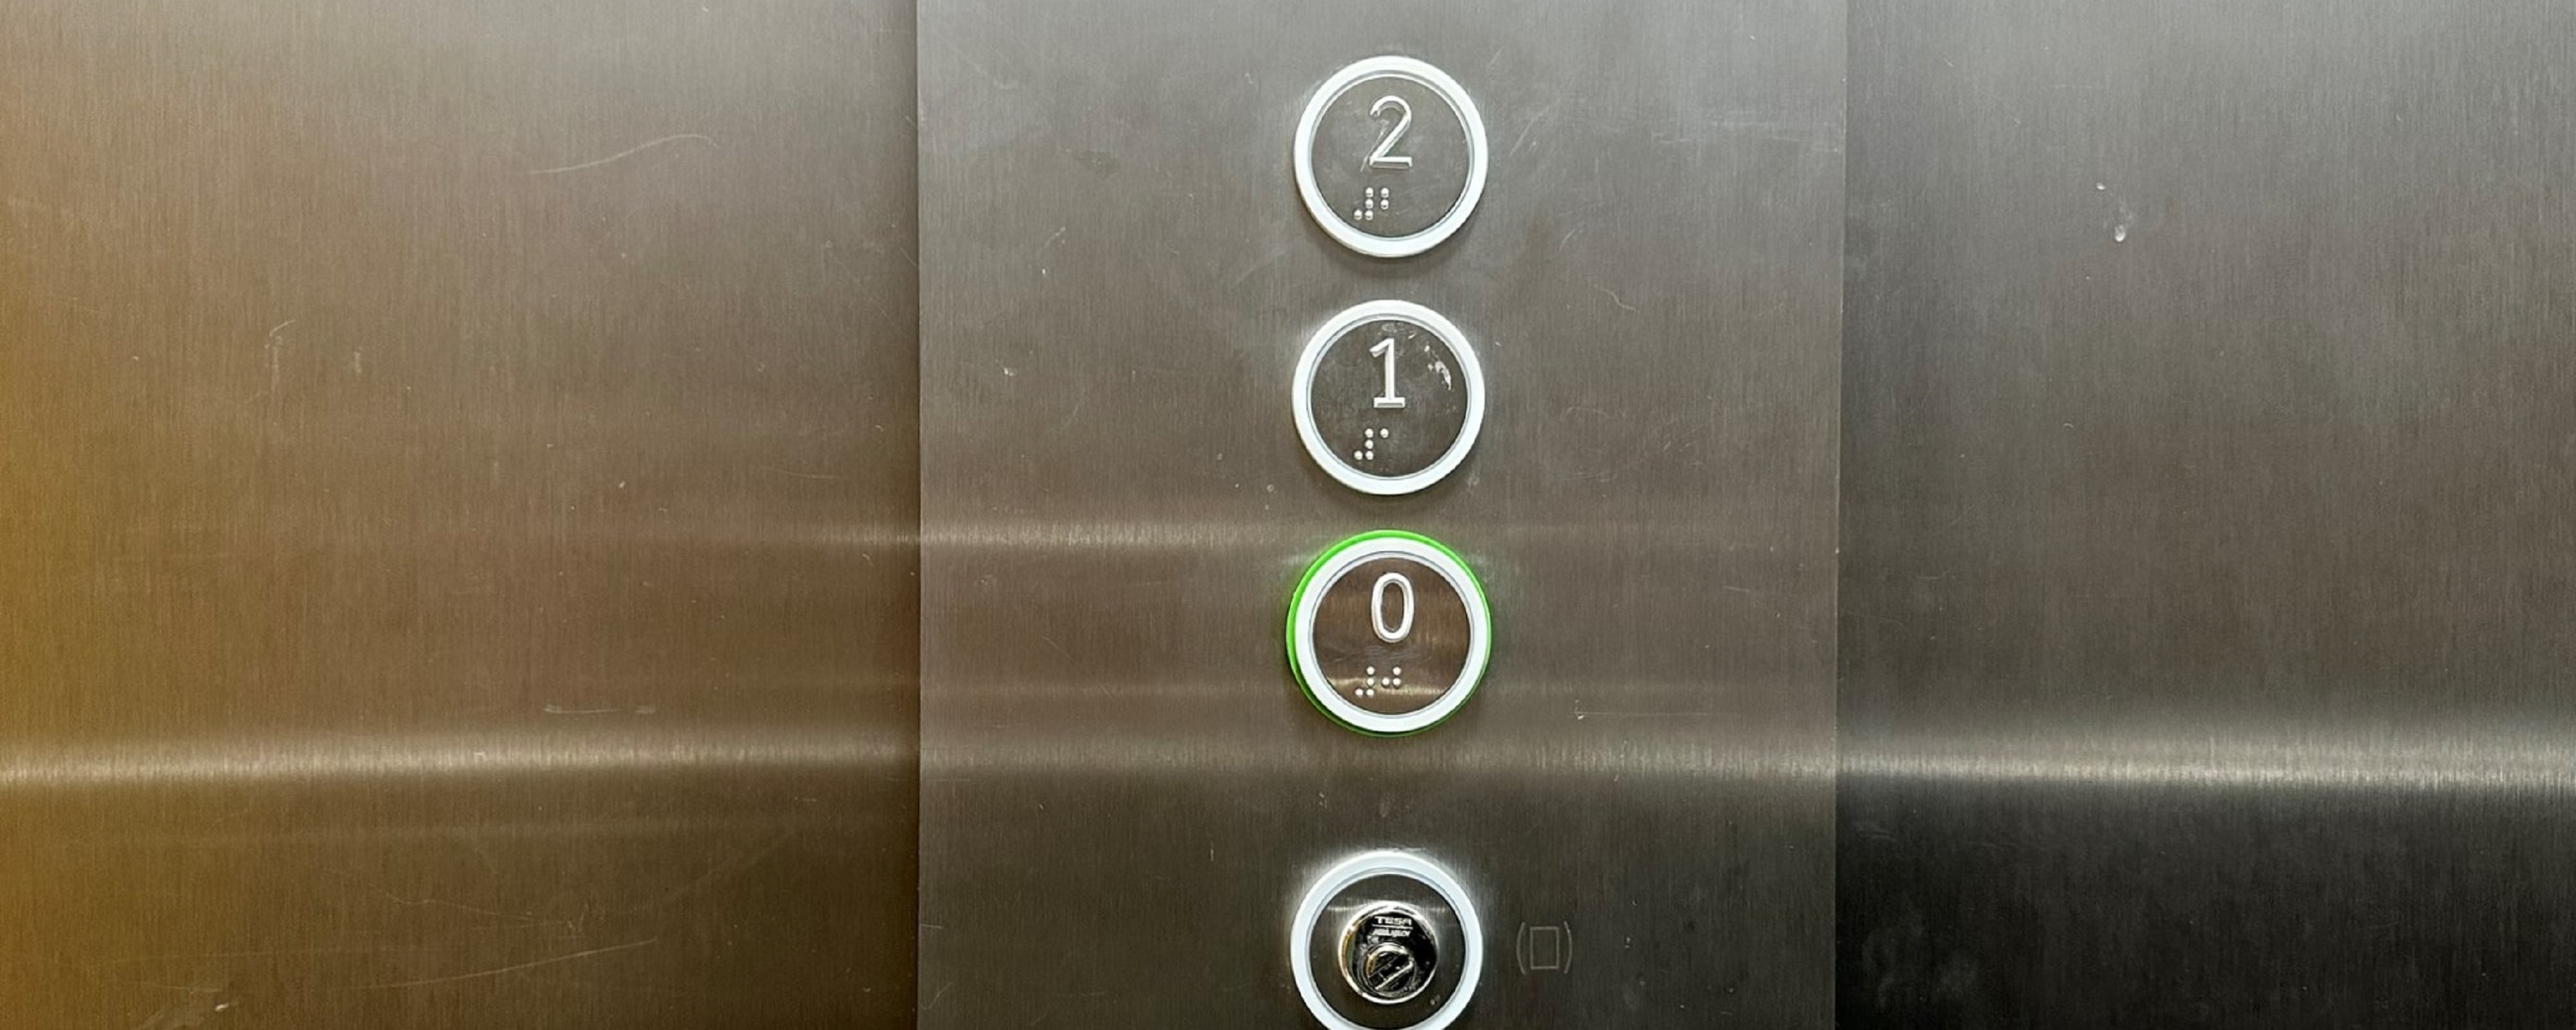 Bild: Knöpfe eines Fahrstuhls mit Brailleschrift